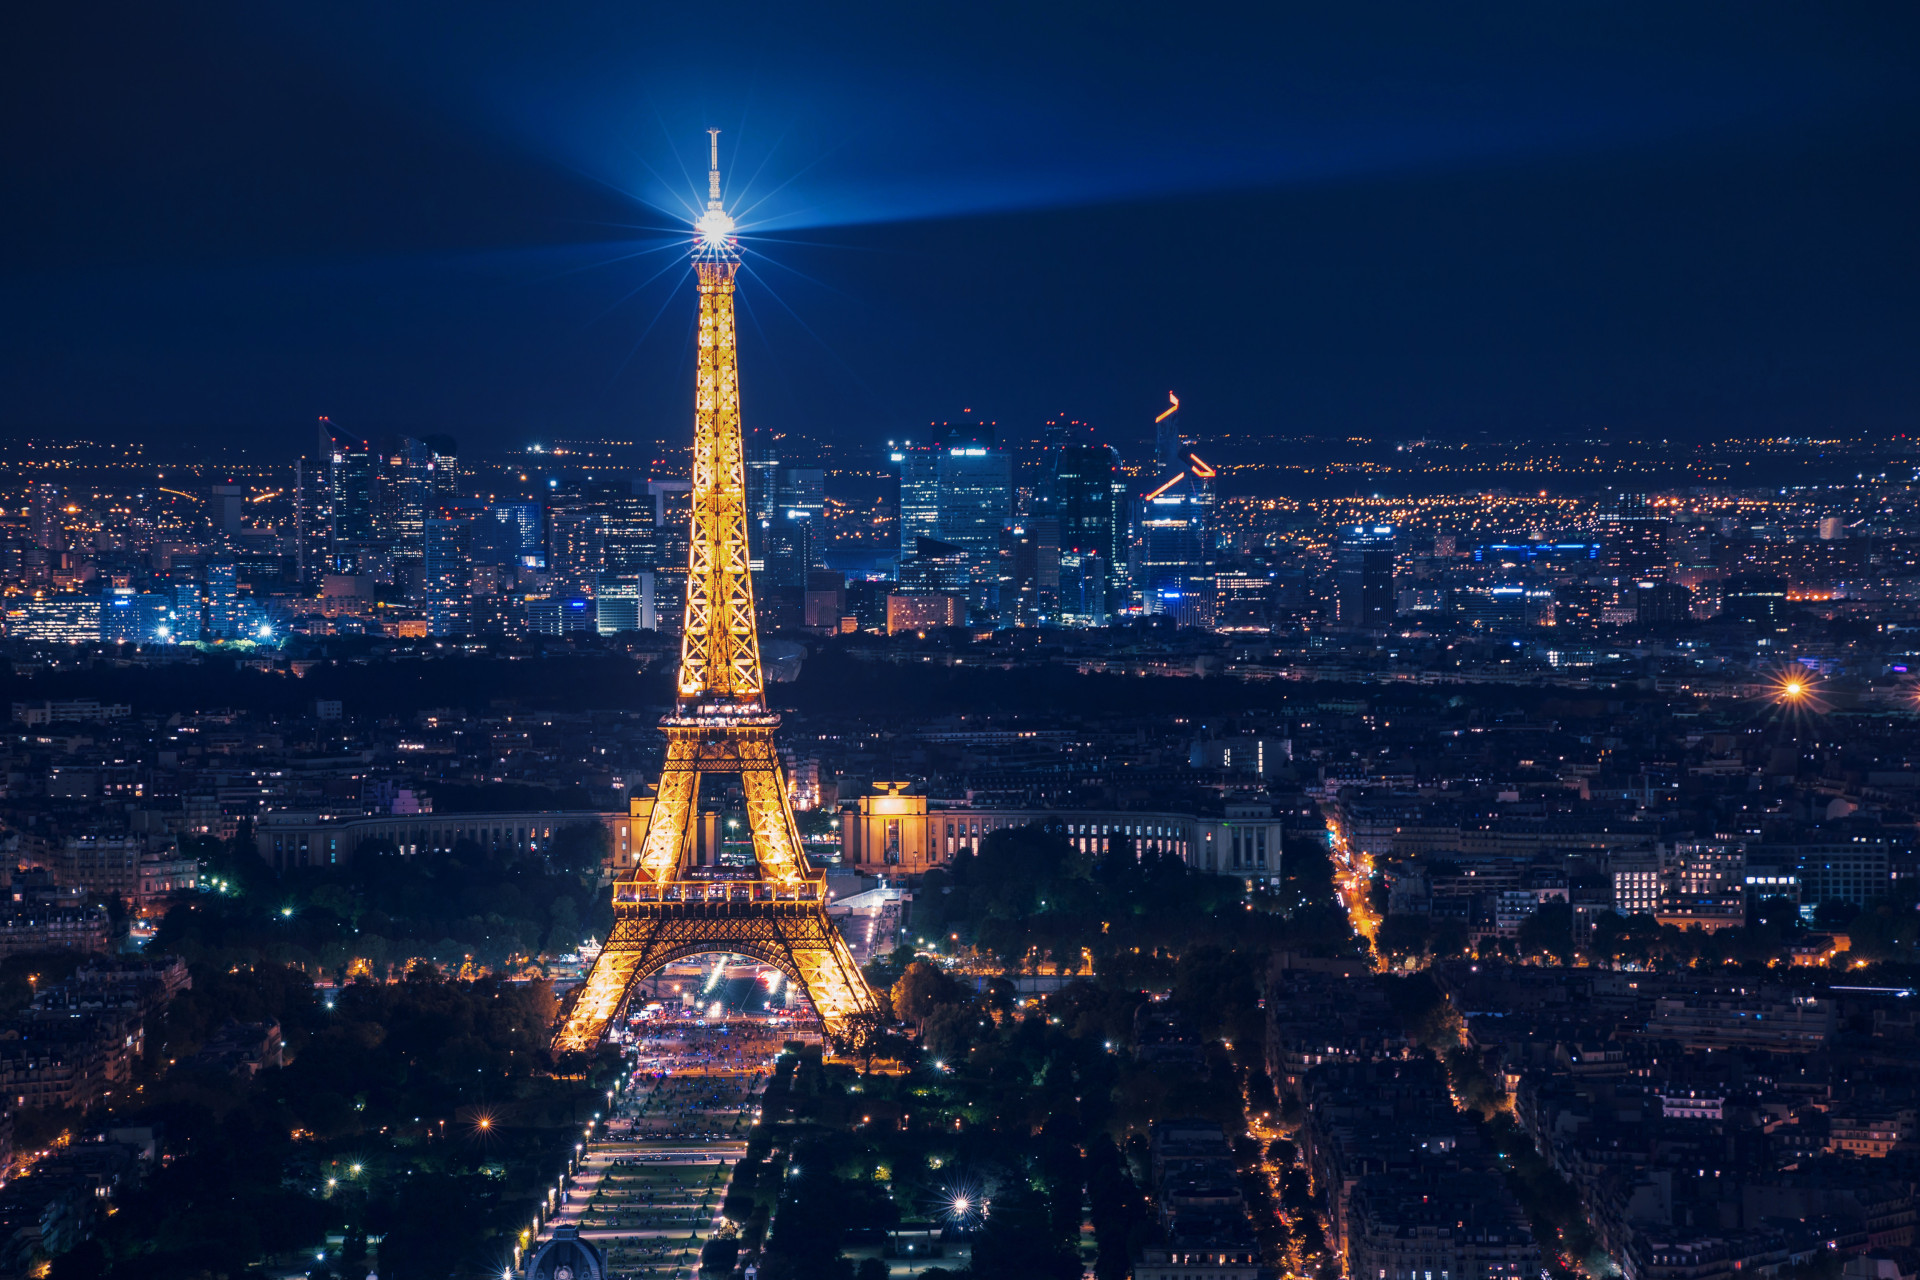 Il est interdit de photographier ou de filmer la tour Eiffel de nuit. En effet, les images nocturnes de la tour Eiffel sont protégées par le droit d'auteur.<p>Tu pourrais aussi aimer:<a href="https://www.starsinsider.com/n/440932?utm_source=msn.com&utm_medium=display&utm_campaign=referral_description&utm_content=722472"> Les meilleurs conseils pour commencer la méditation</a></p>